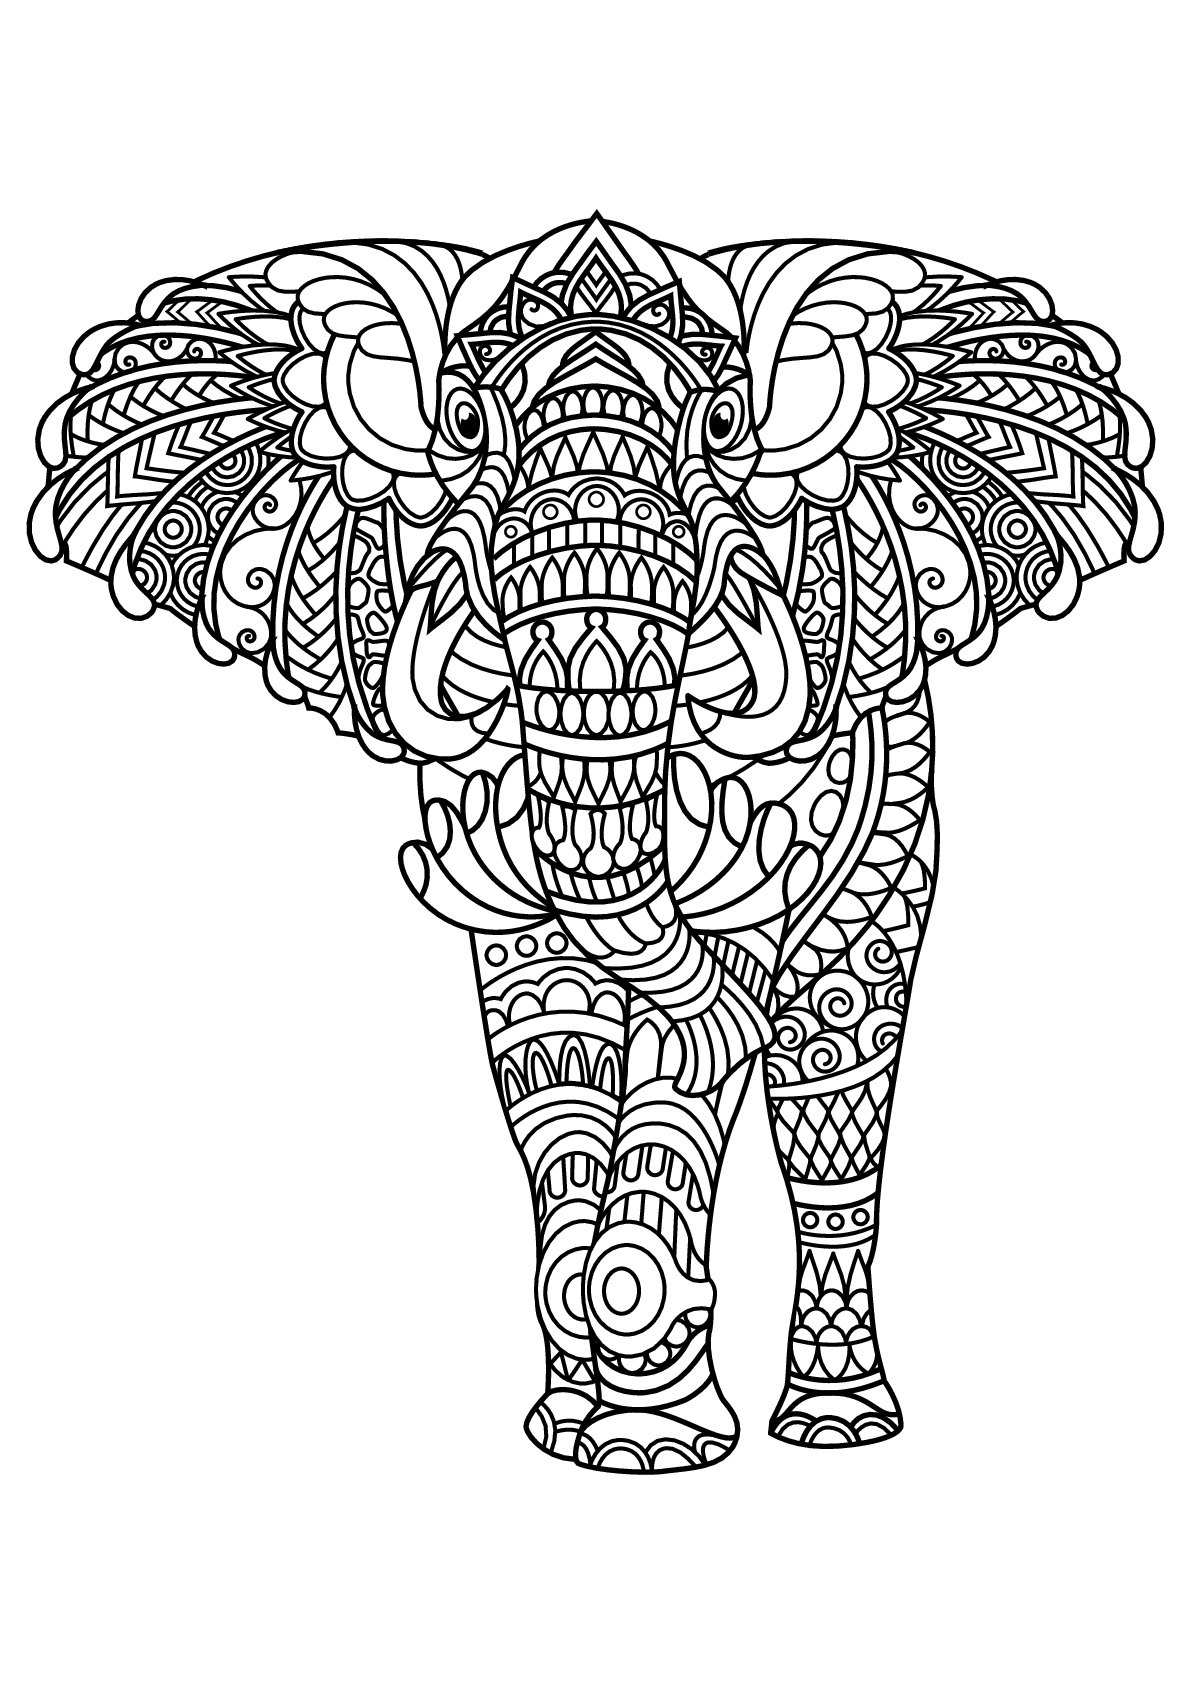 Eléphant majestueux, avec motifs harmonieux et complexes